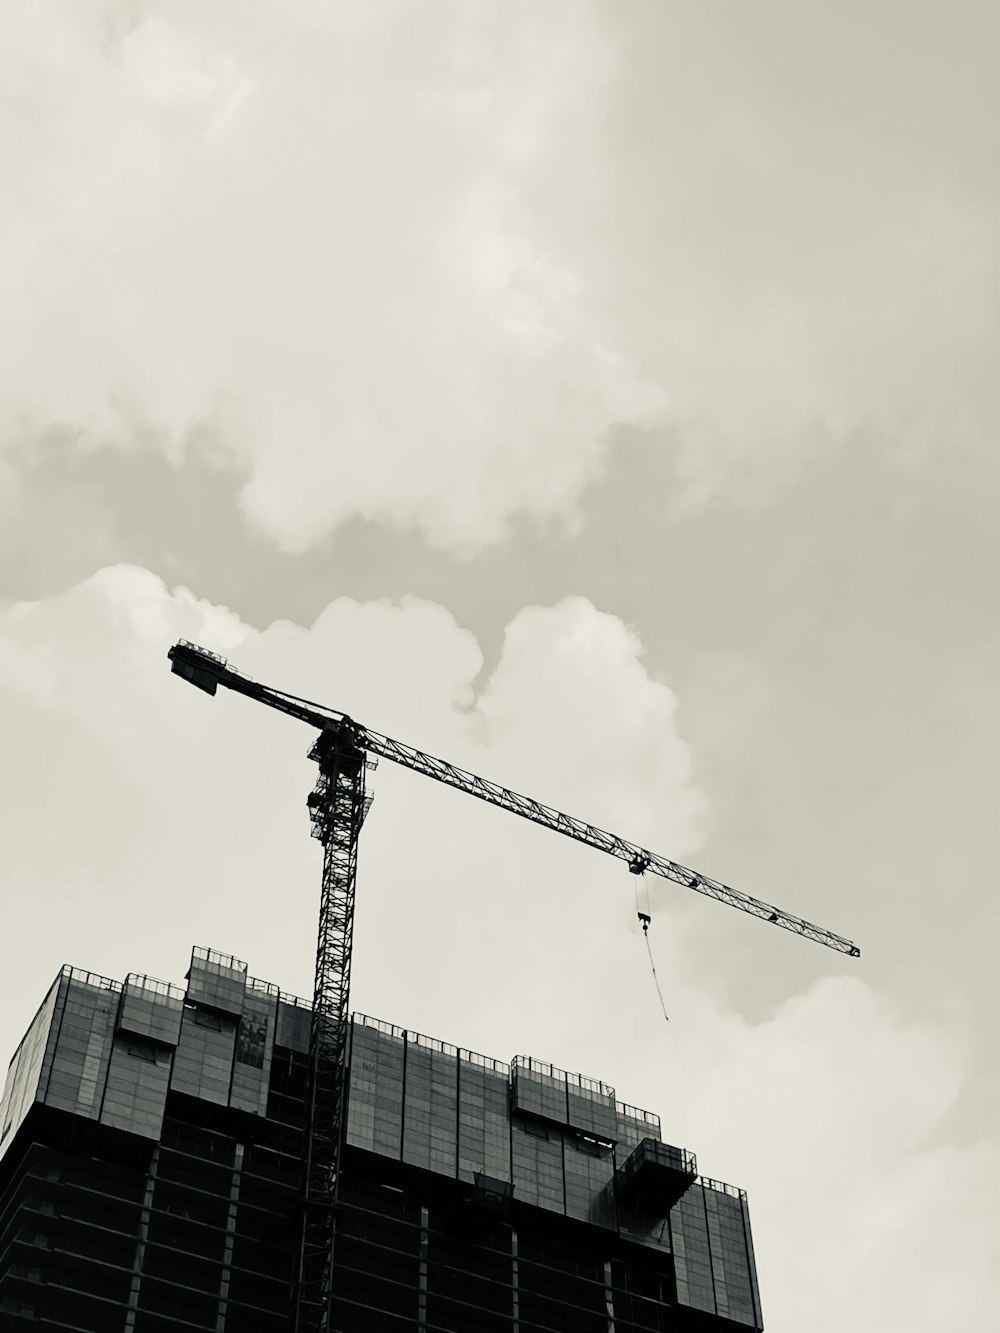 a crane next to a building